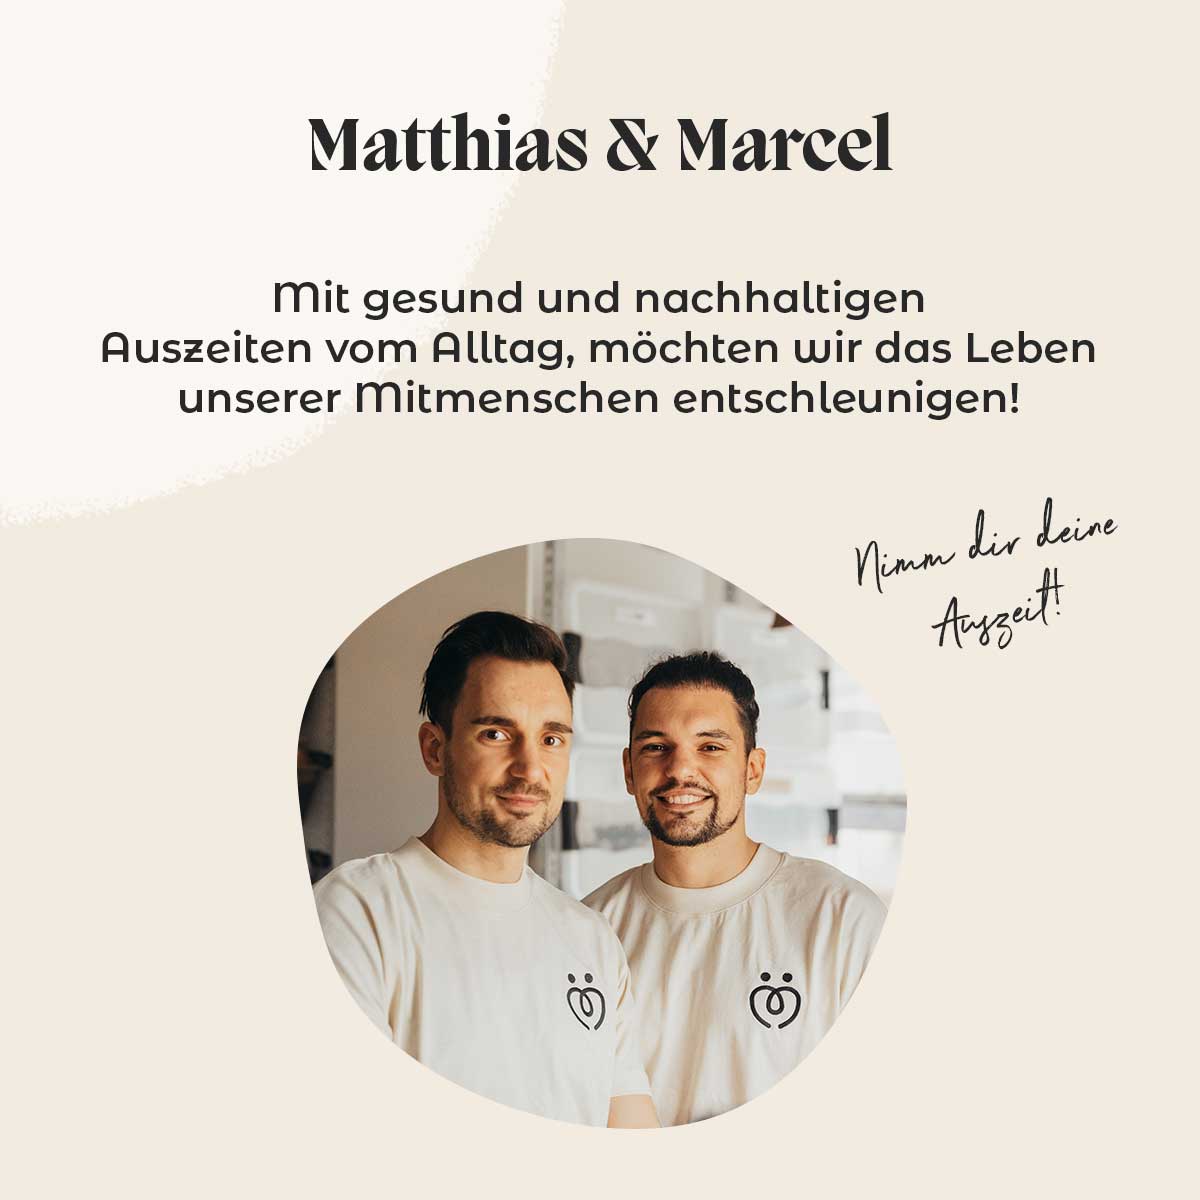 Auf diesem Bild werden die Gründer des Tee Versandhandel Matthias und Marcel dargestellt.